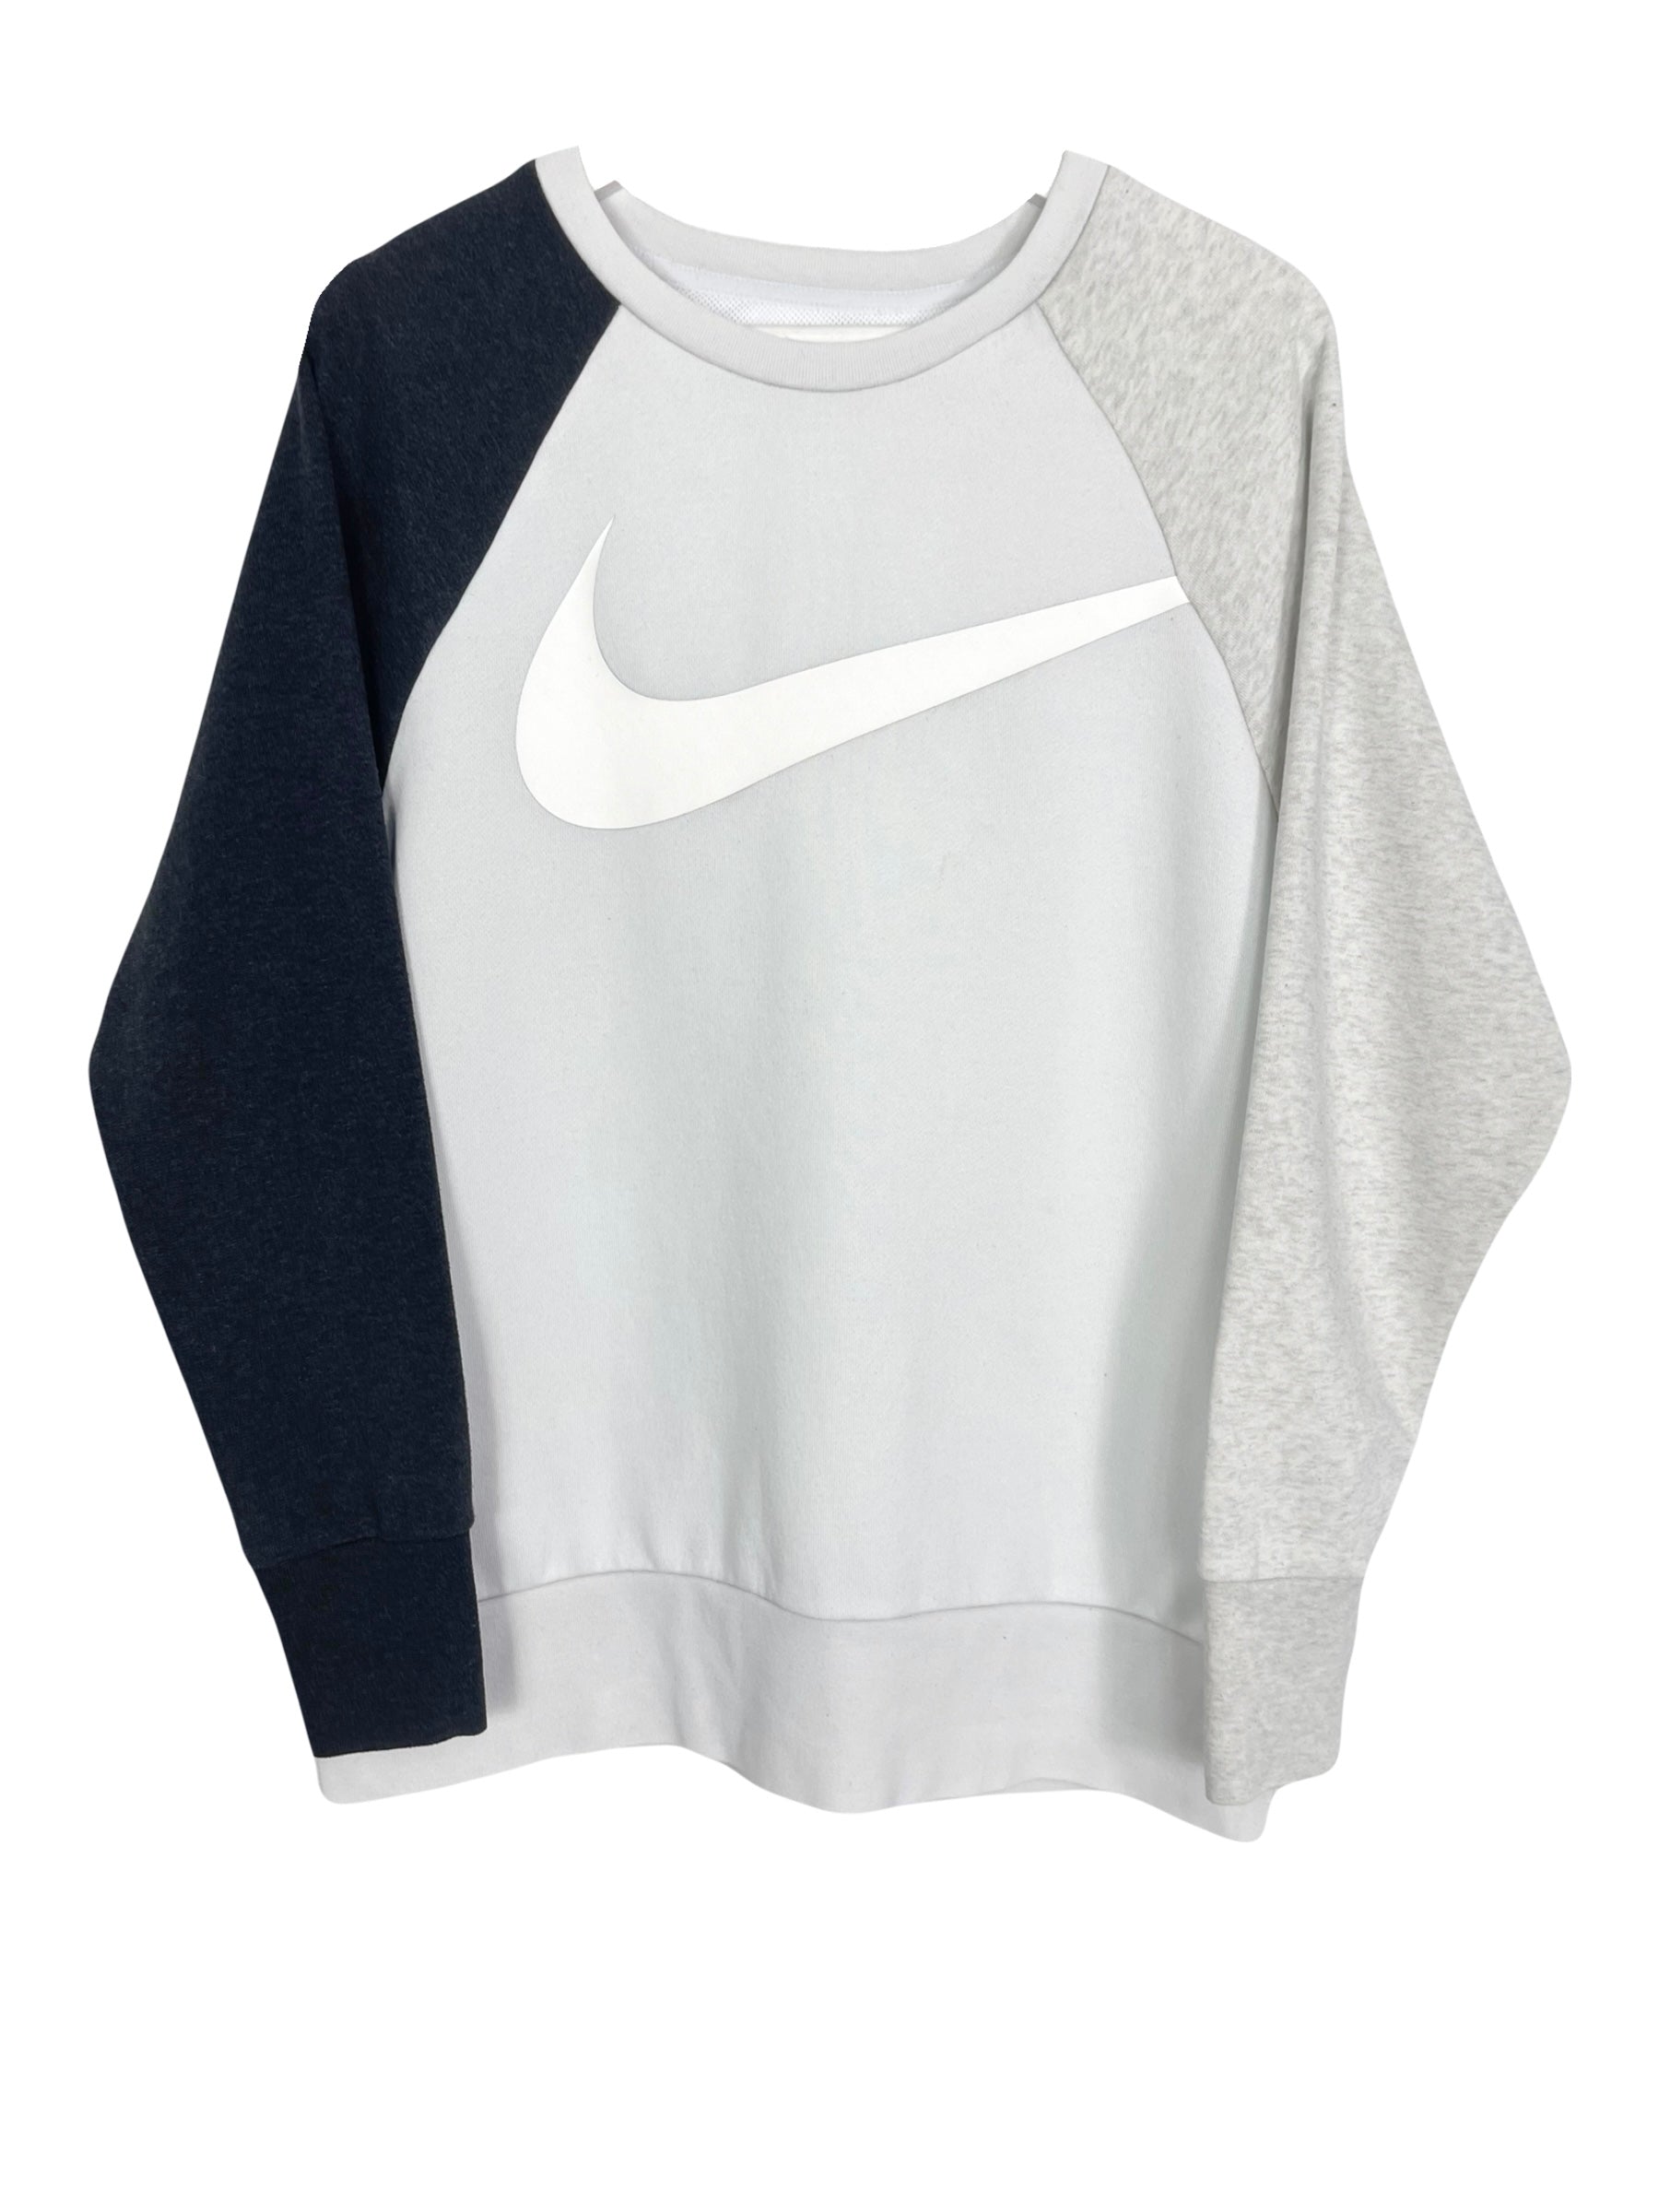  Sweatshirt Nike Sweat - S - PLOMOSTORE